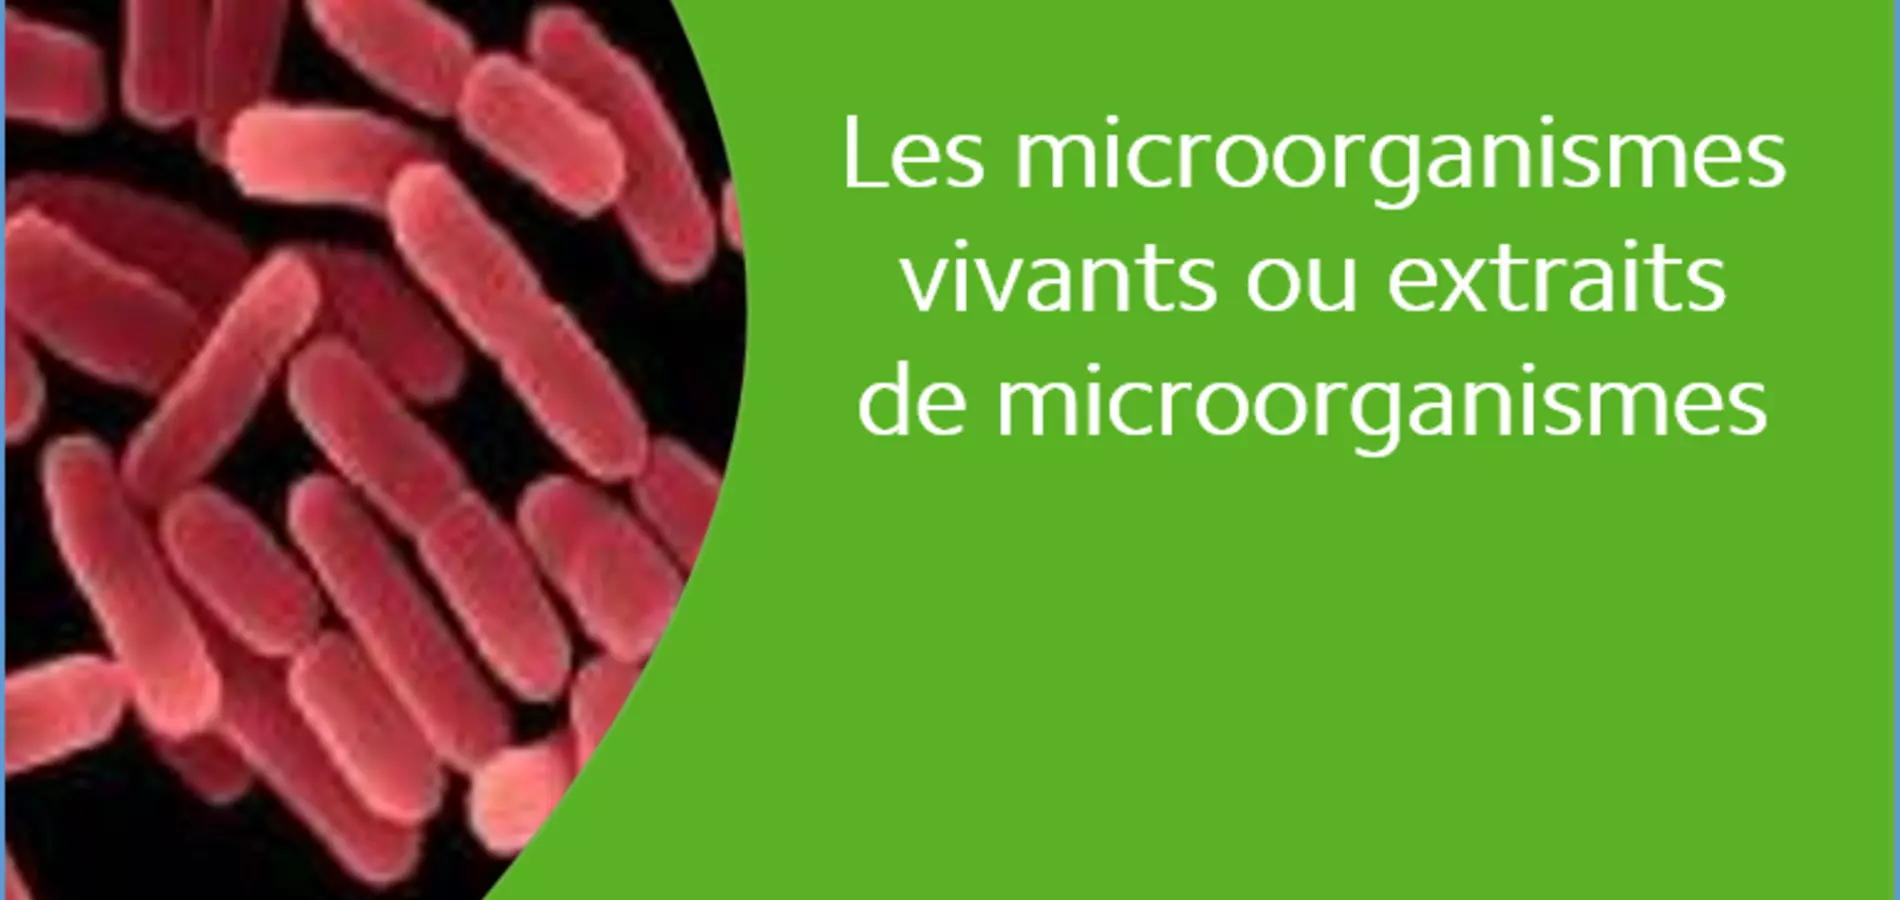 Les microorganismes vivants ou extraits de microorganismes - Bacillus